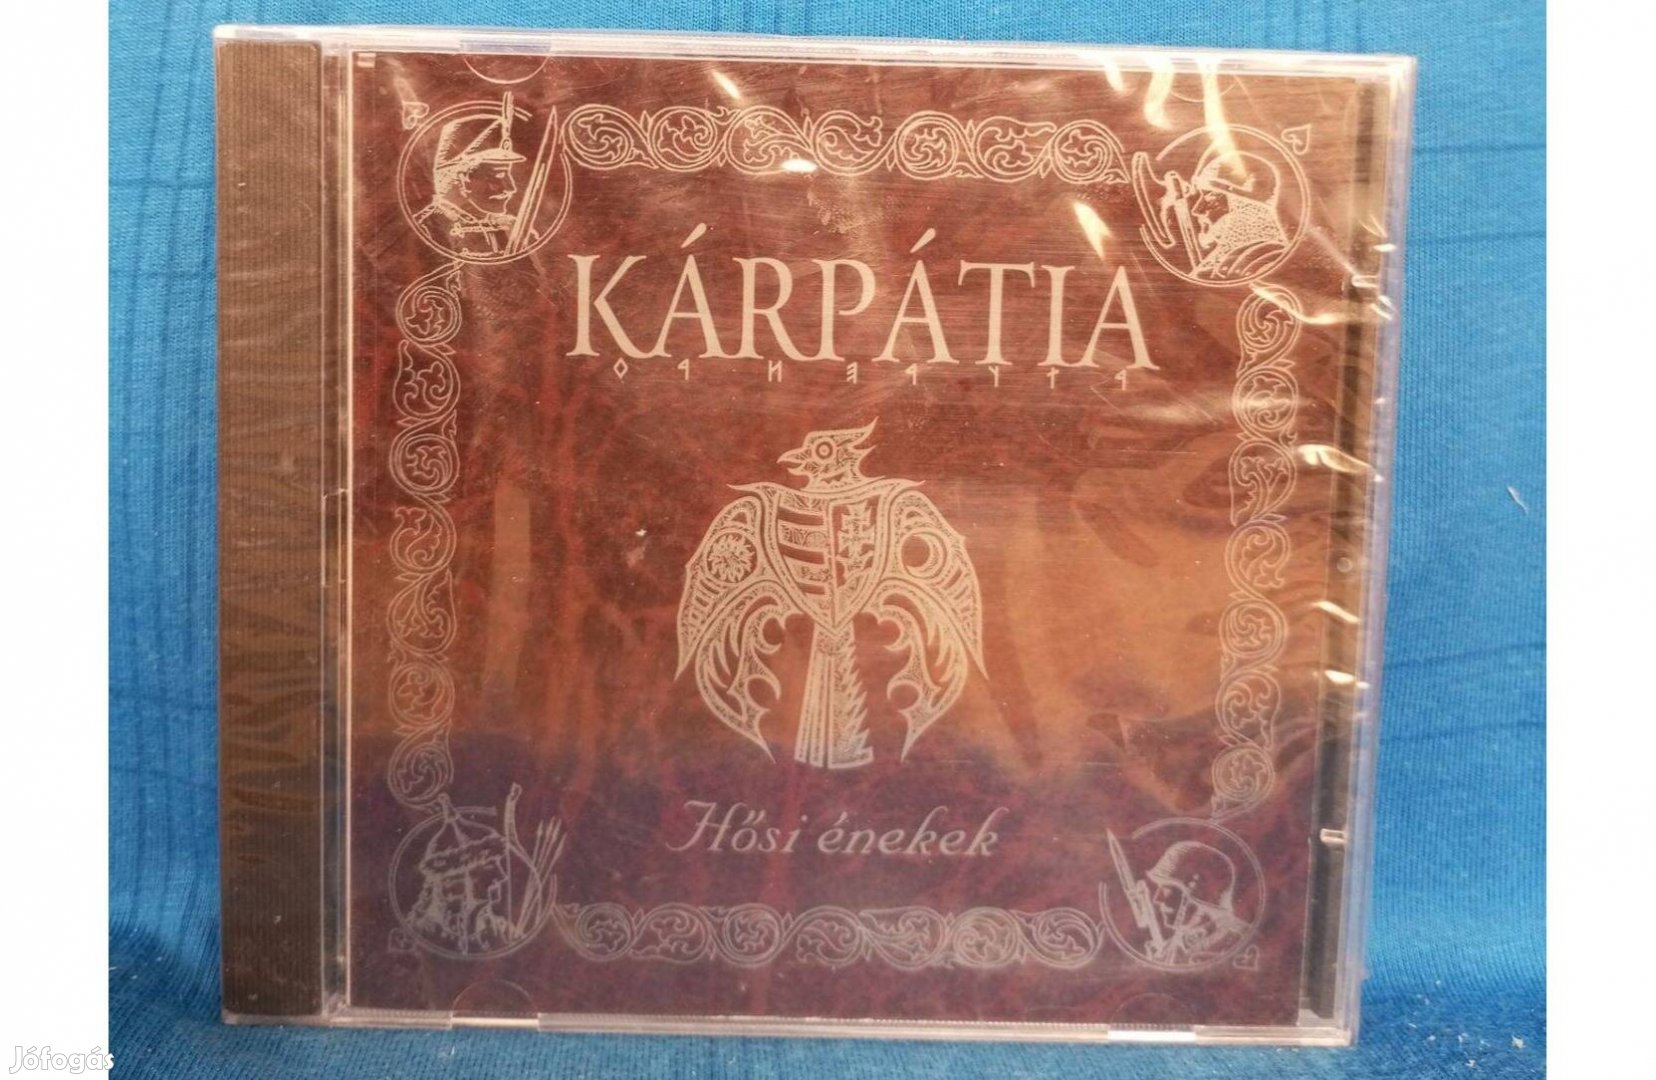 Kárpátia - Hősi énekek CD. /új, fóliás/